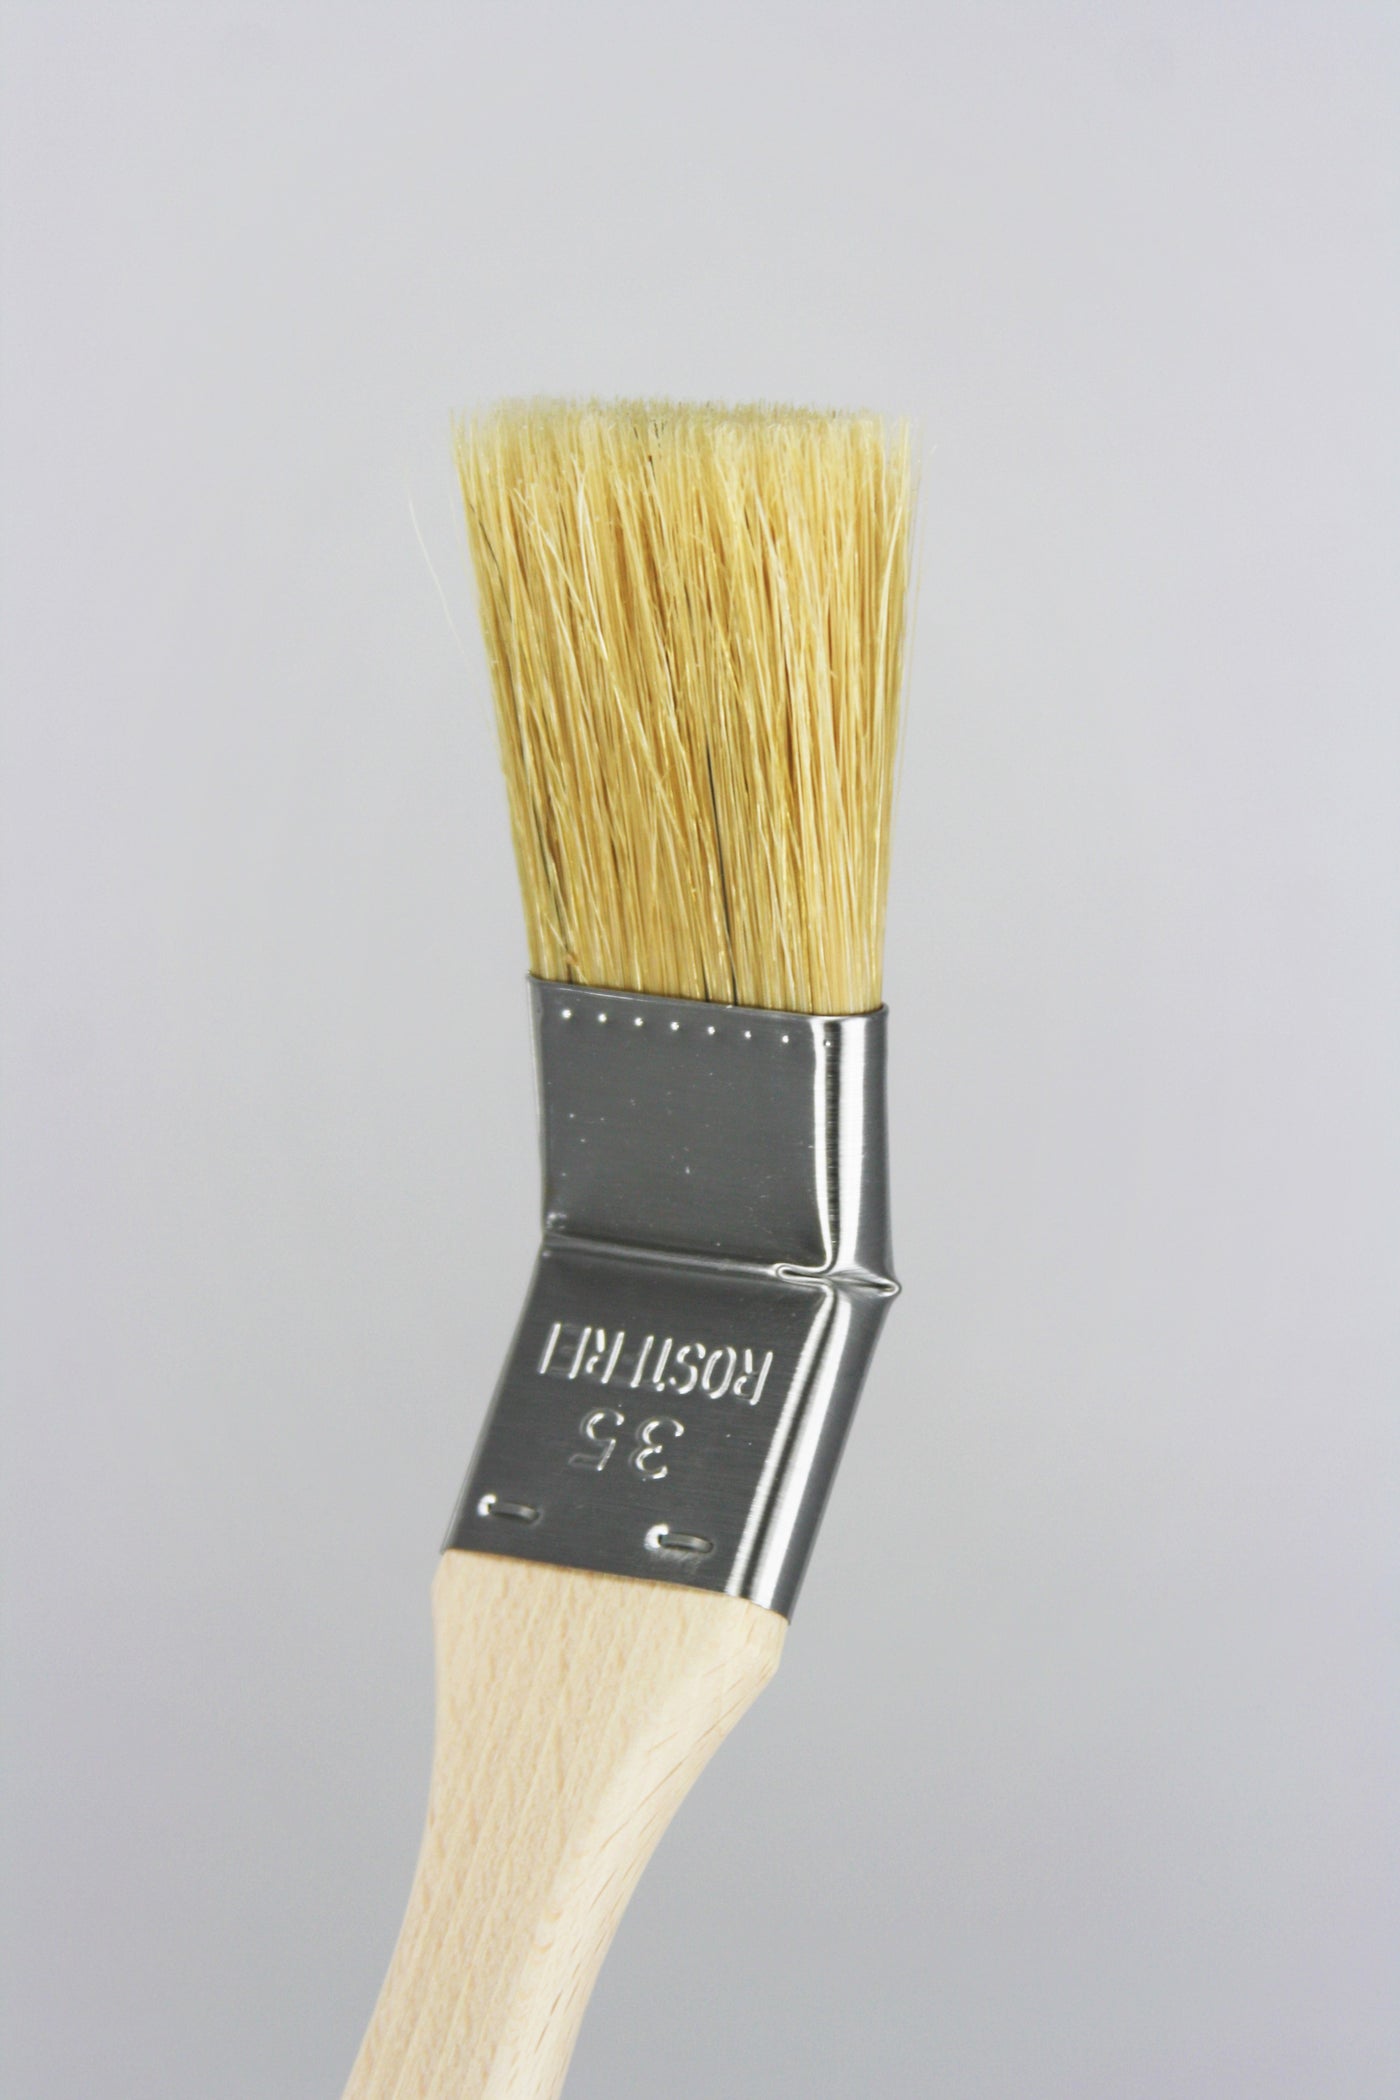 Radiator Brush (3512) - Old World Paint Brushes